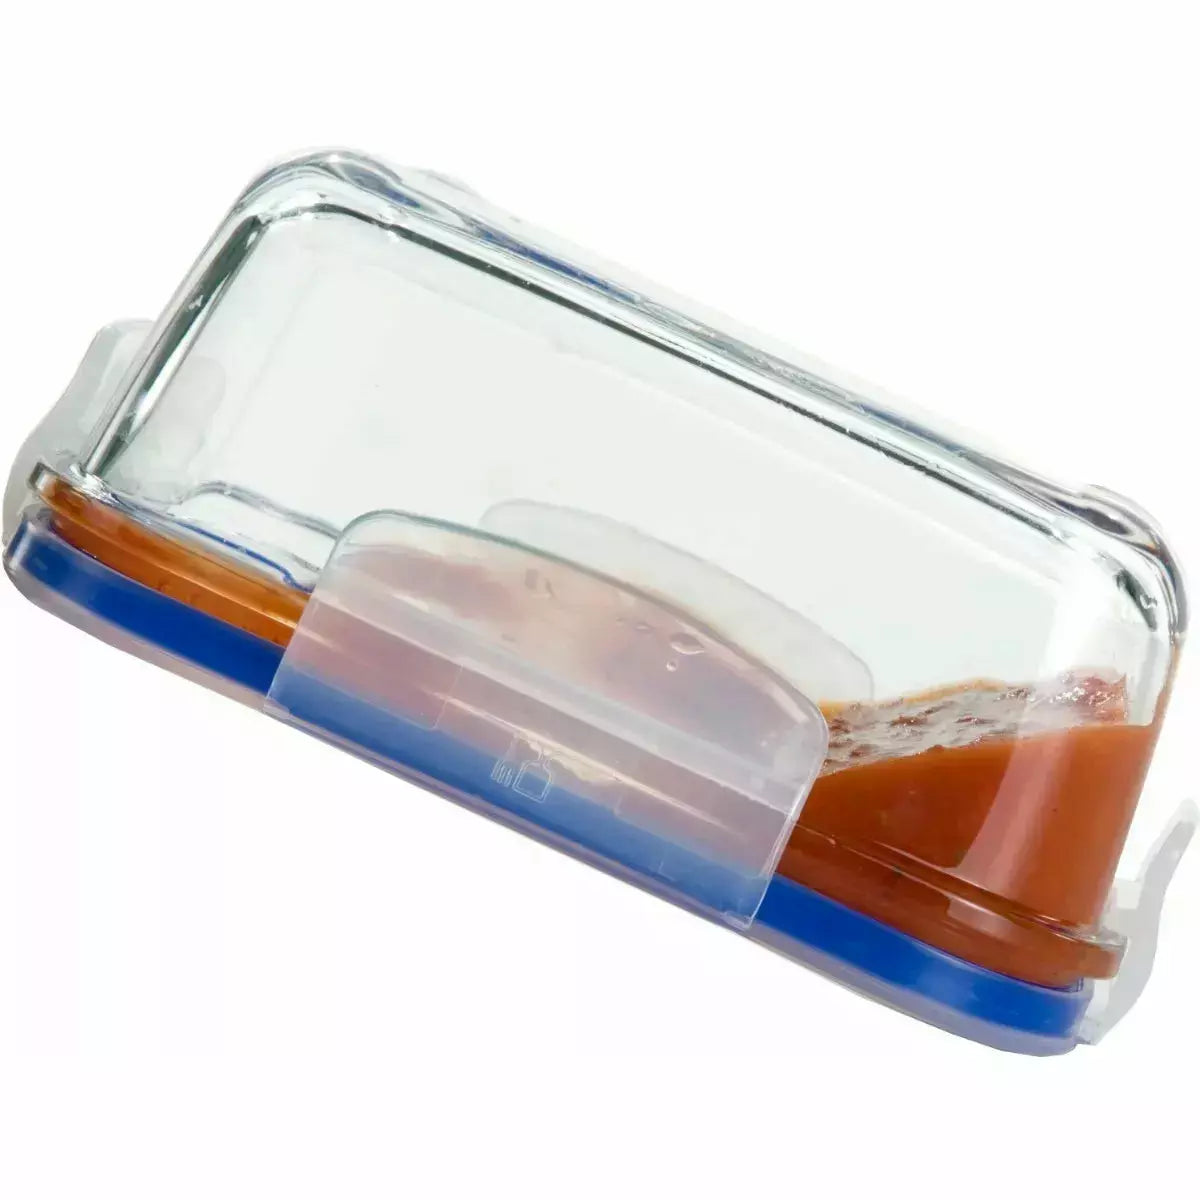 Superblock Contendor 380 Ml Recipiente de Vidrio Cuadrado Para Almacenamiento Alimentos Hogar Y Cocina Lunch Tupper